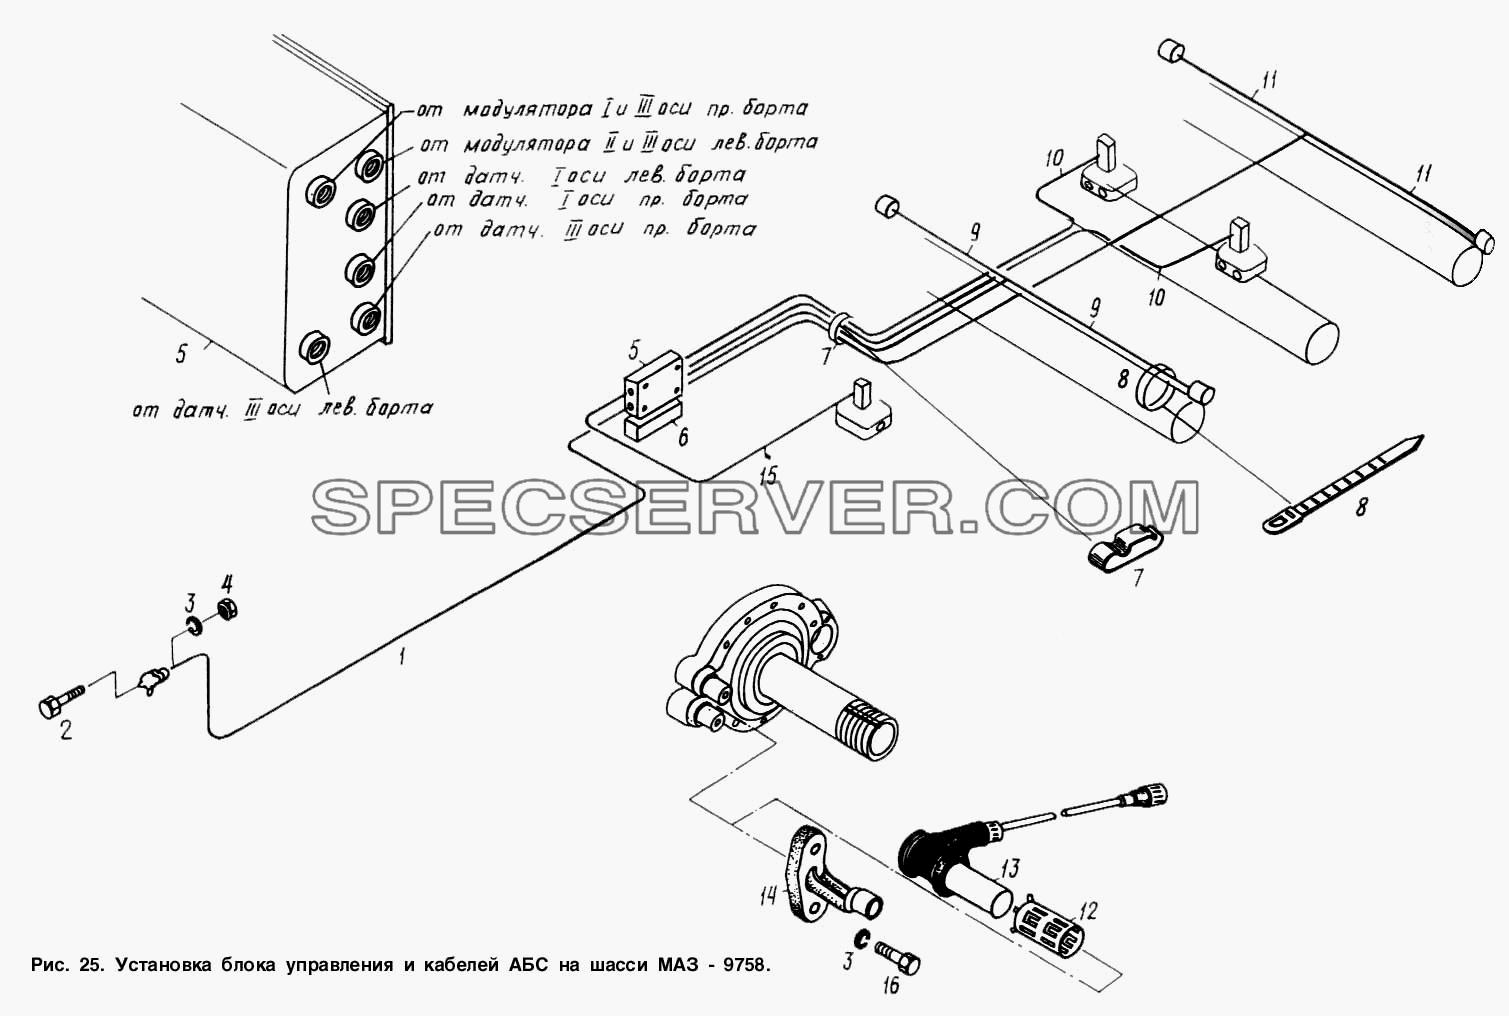 Установка блока управления и кабелей АБС на шасси МАЗ-9758 для МАЗ-9758-30 (список запасных частей)